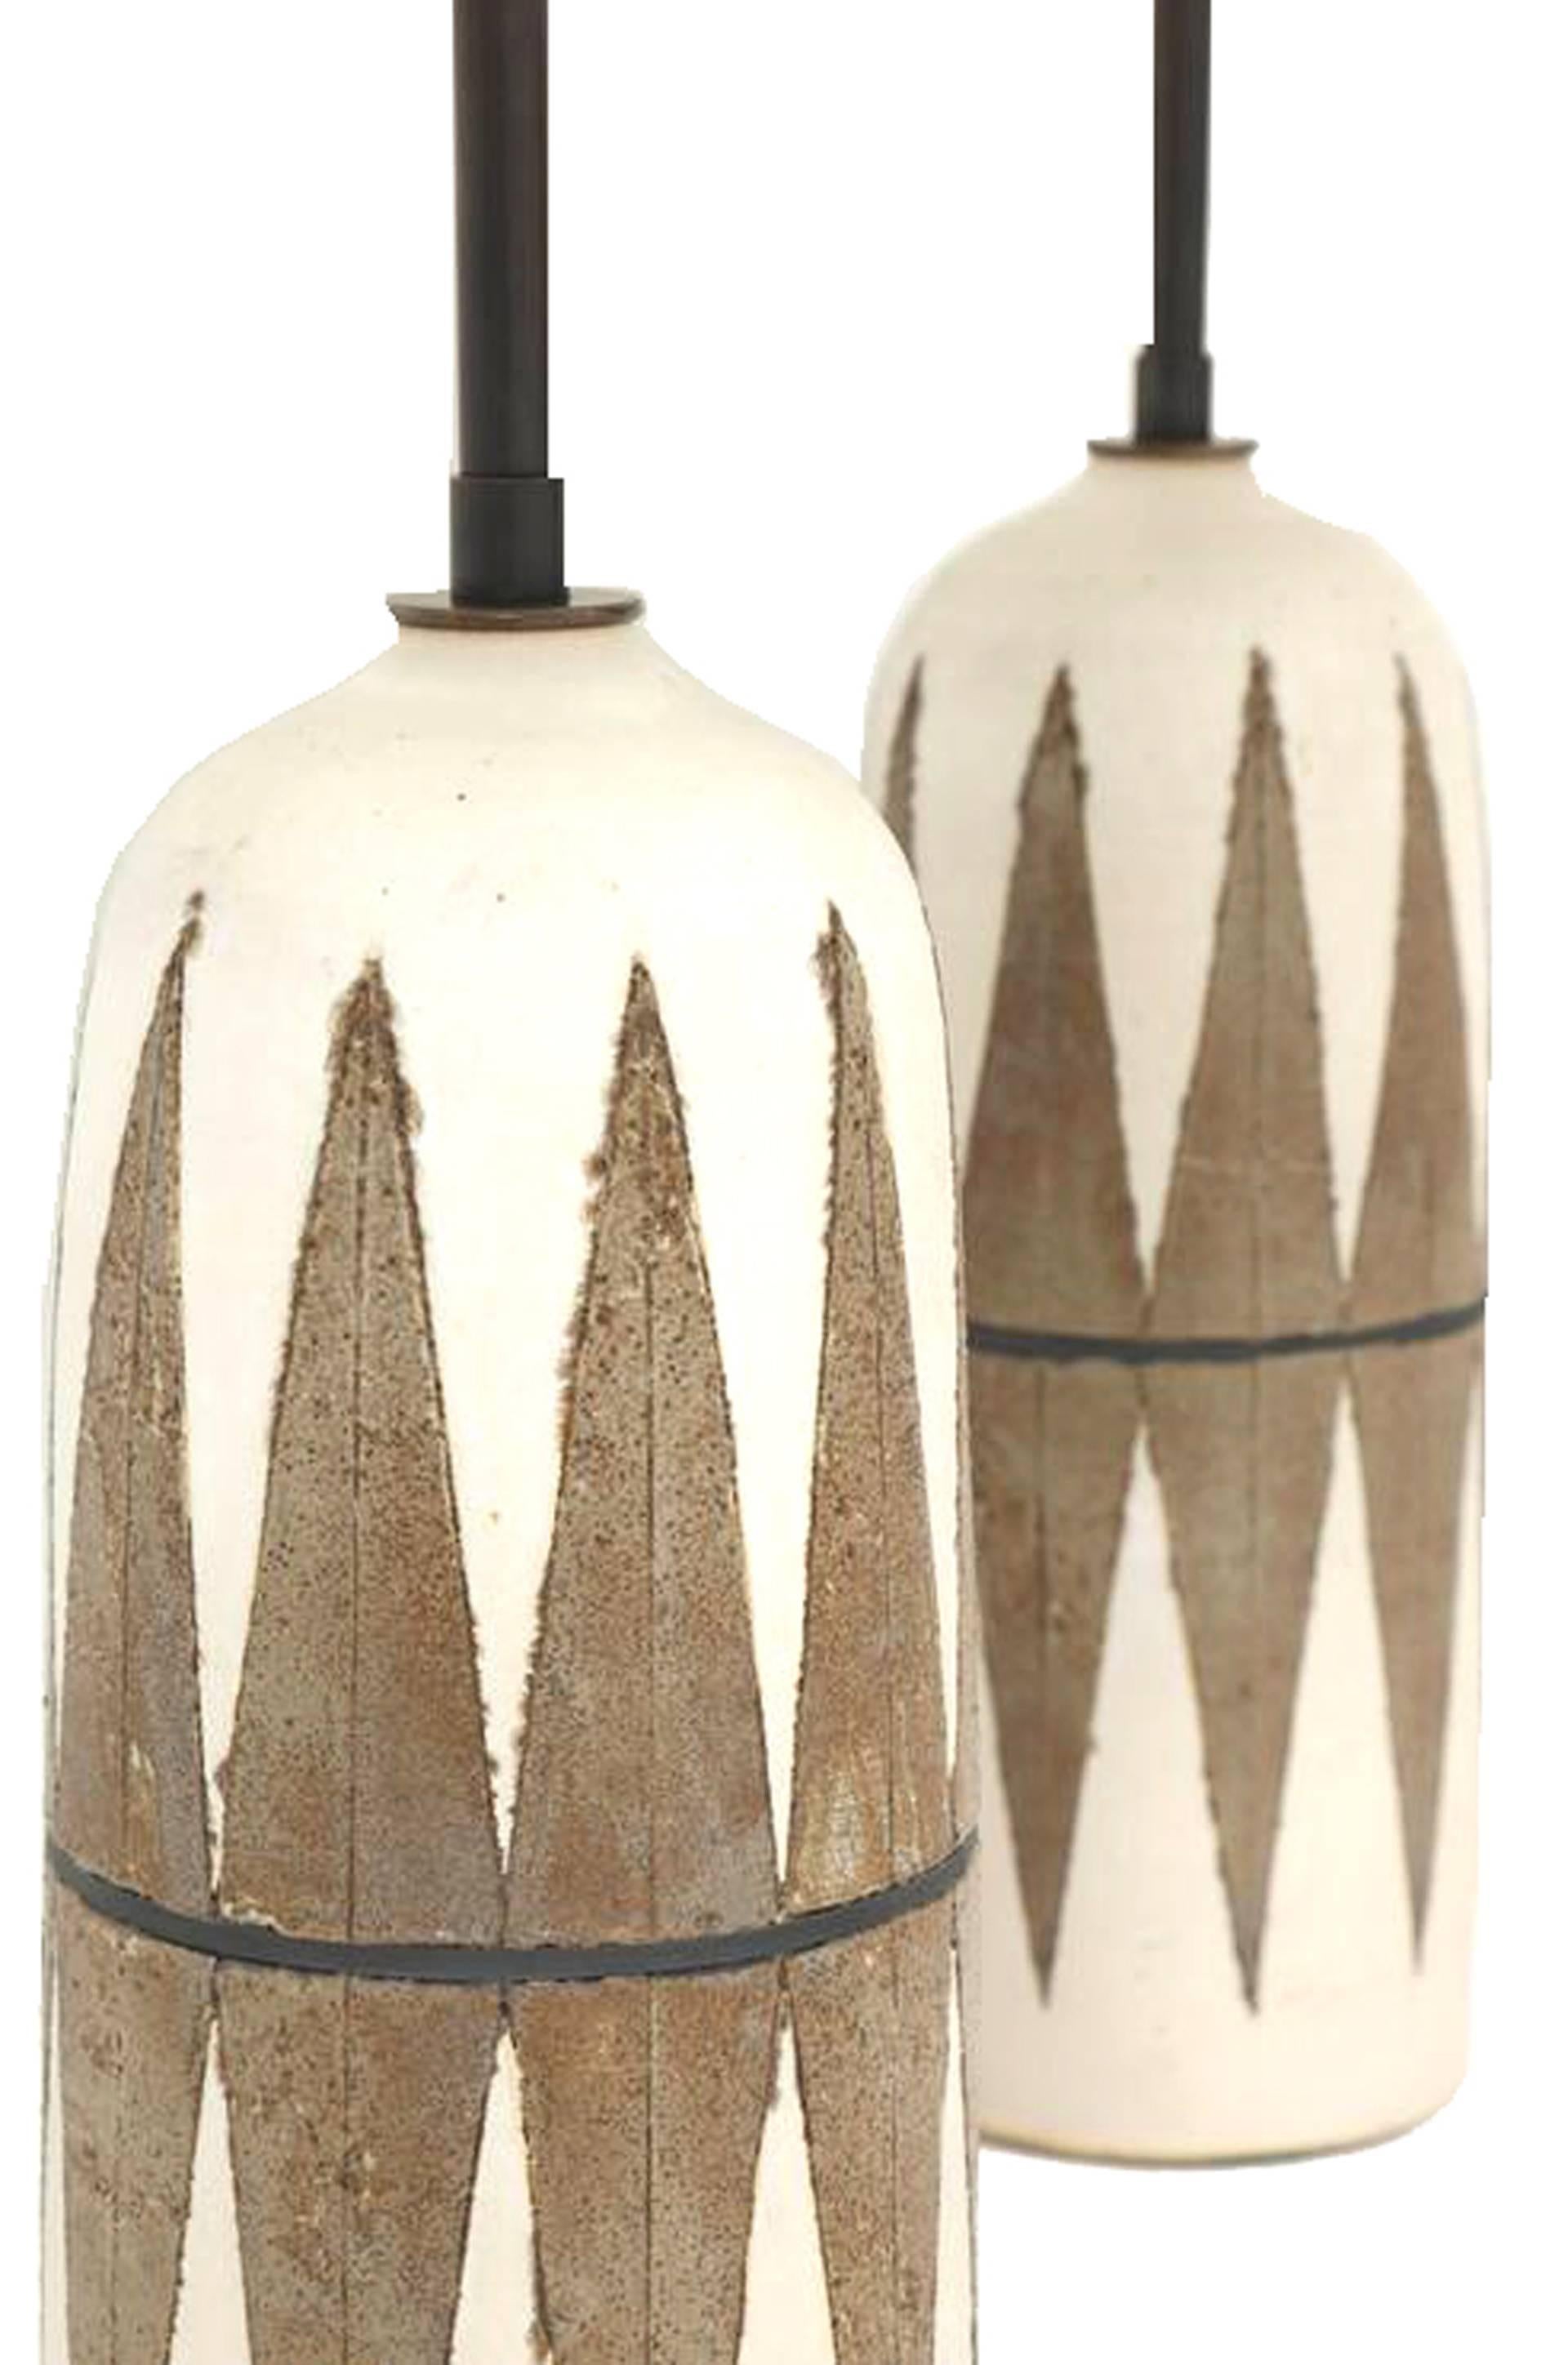 Contemporary Matthew Ward Studio Ceramic Table Lamps